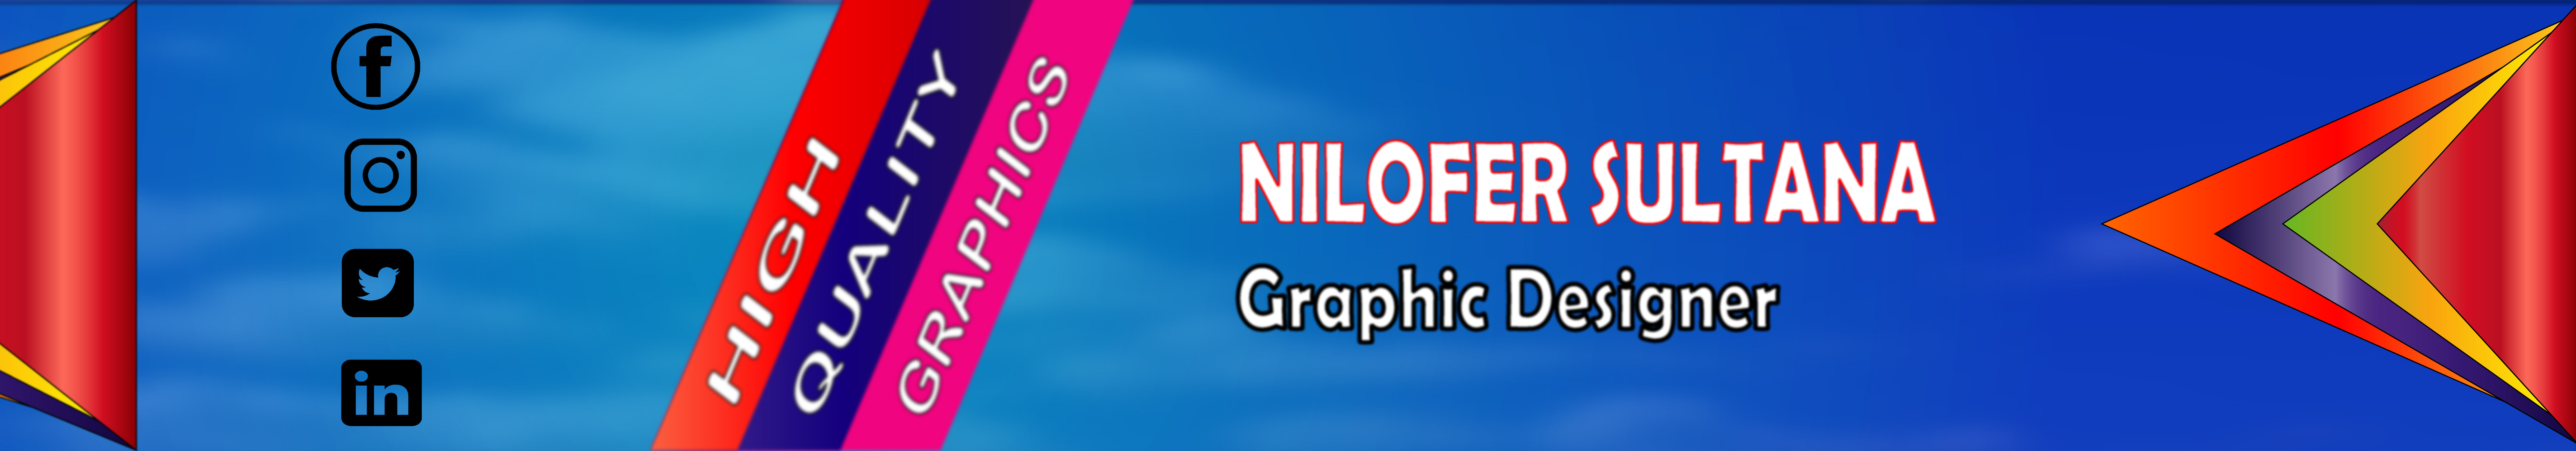 Nilofer Sultana's profile banner